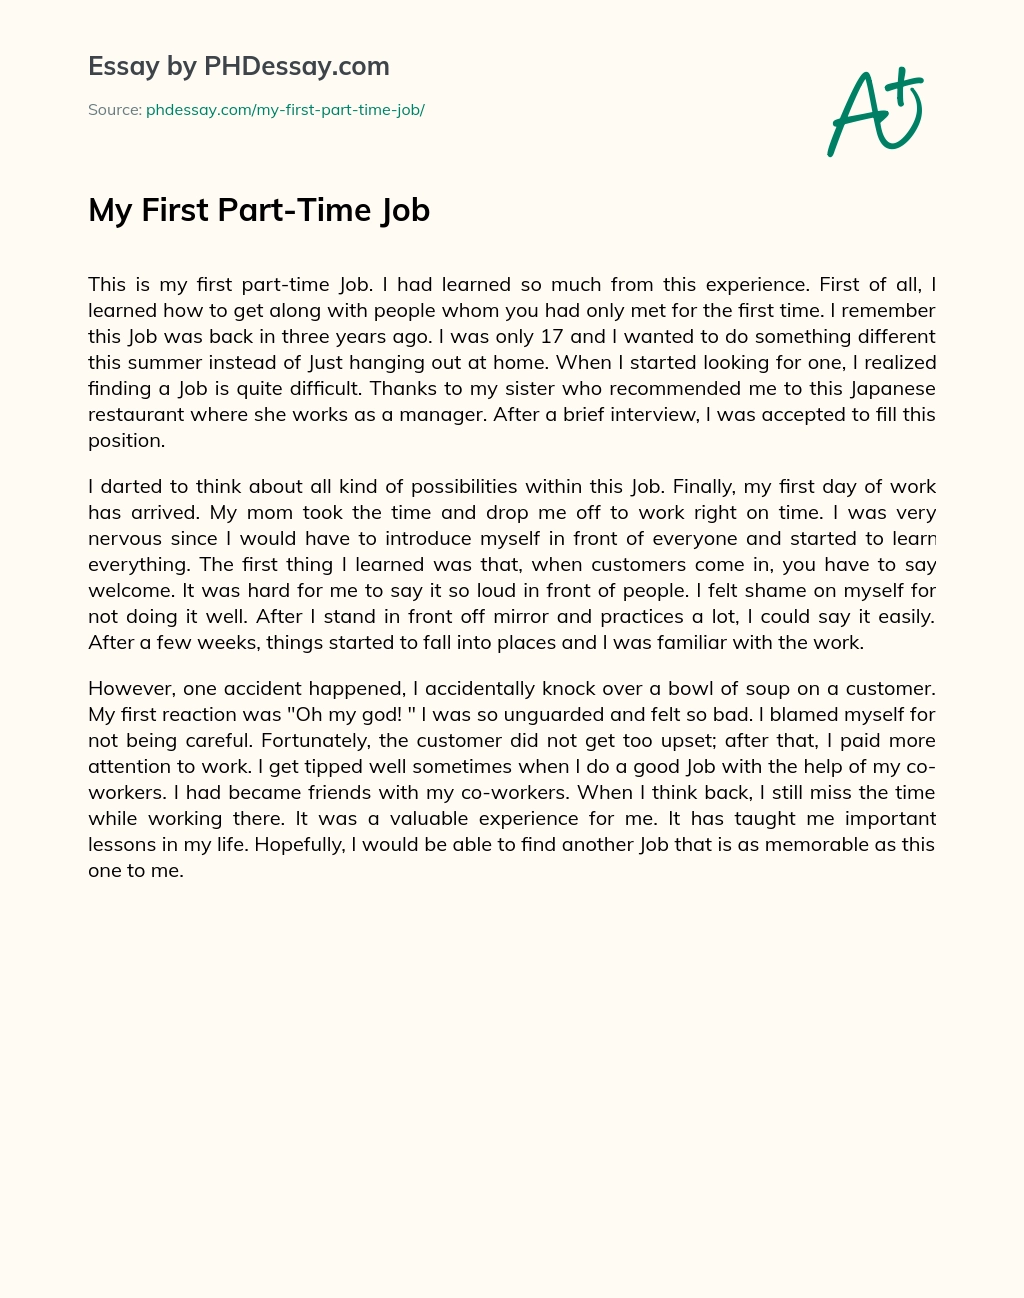 argumentative essay about part time job